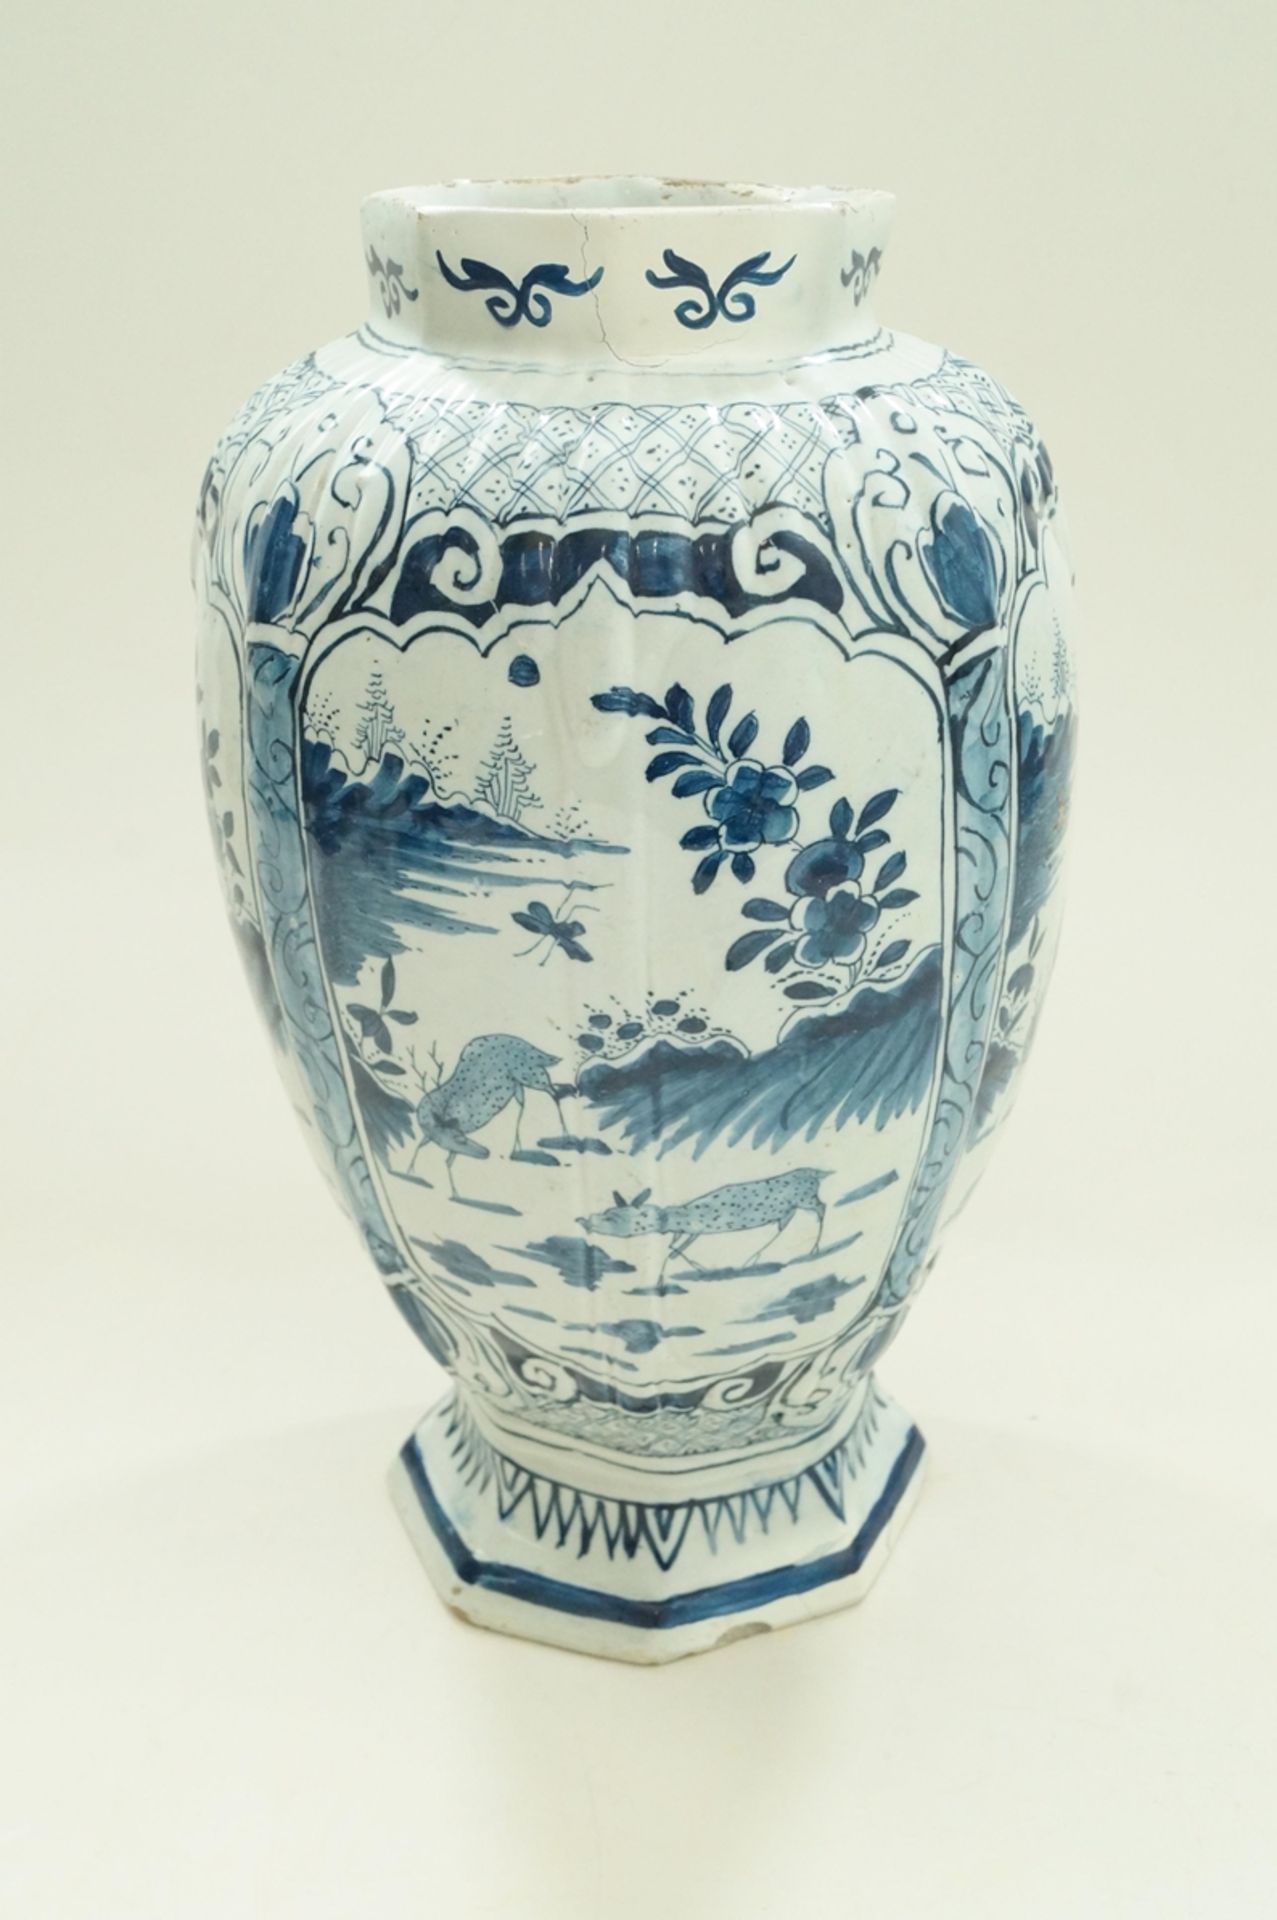 Große, niederländische Fayence-Vase, Zinnglasur, umlaufend in vier Kartuschen gleiche Rotwild-Szene - Bild 3 aus 6